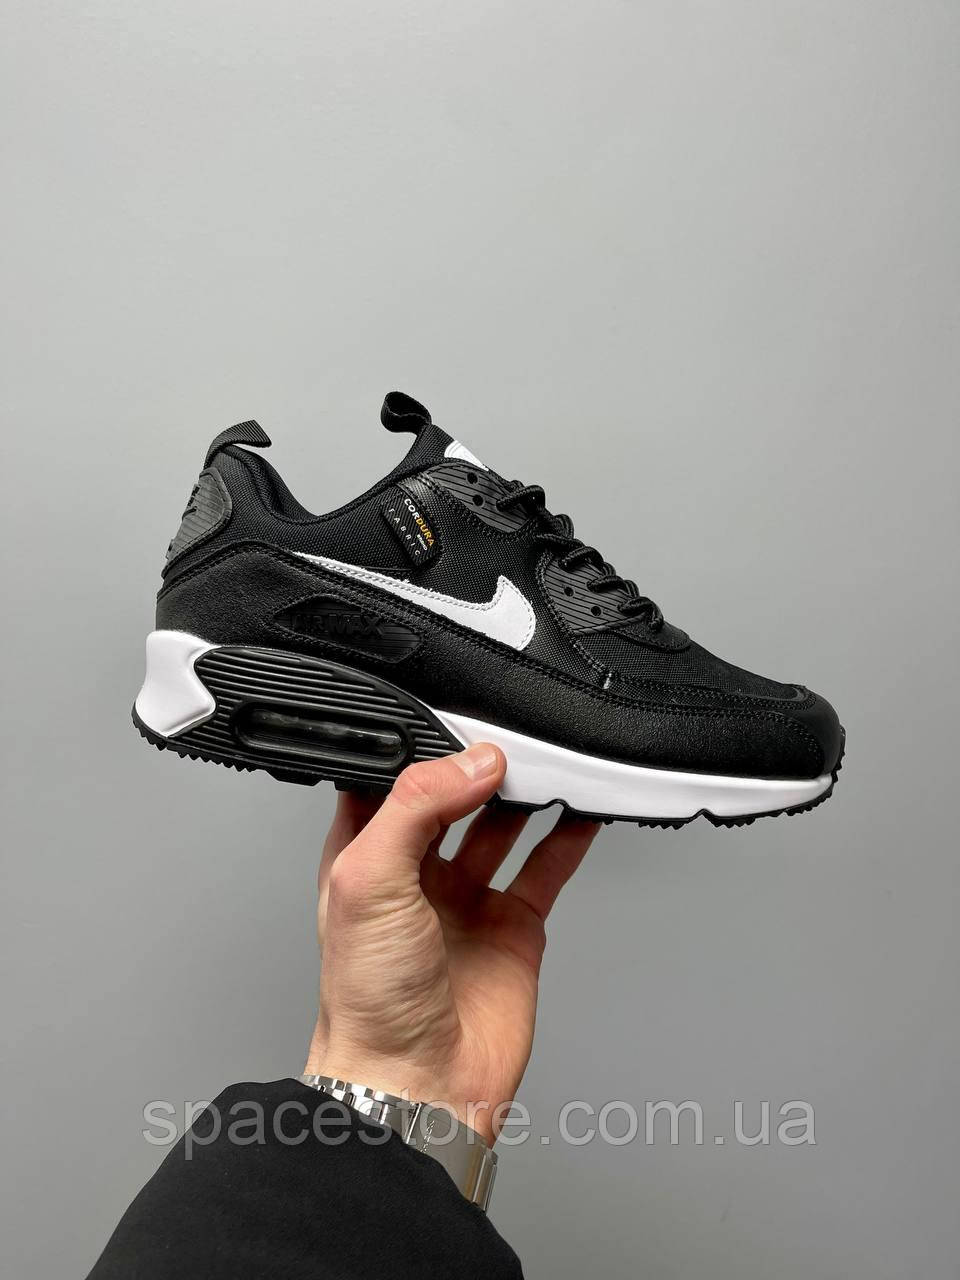 Чоловічі Кросівки Nike Air Max 90 Surplus 'Black' шкіряні найк аір макс чорні